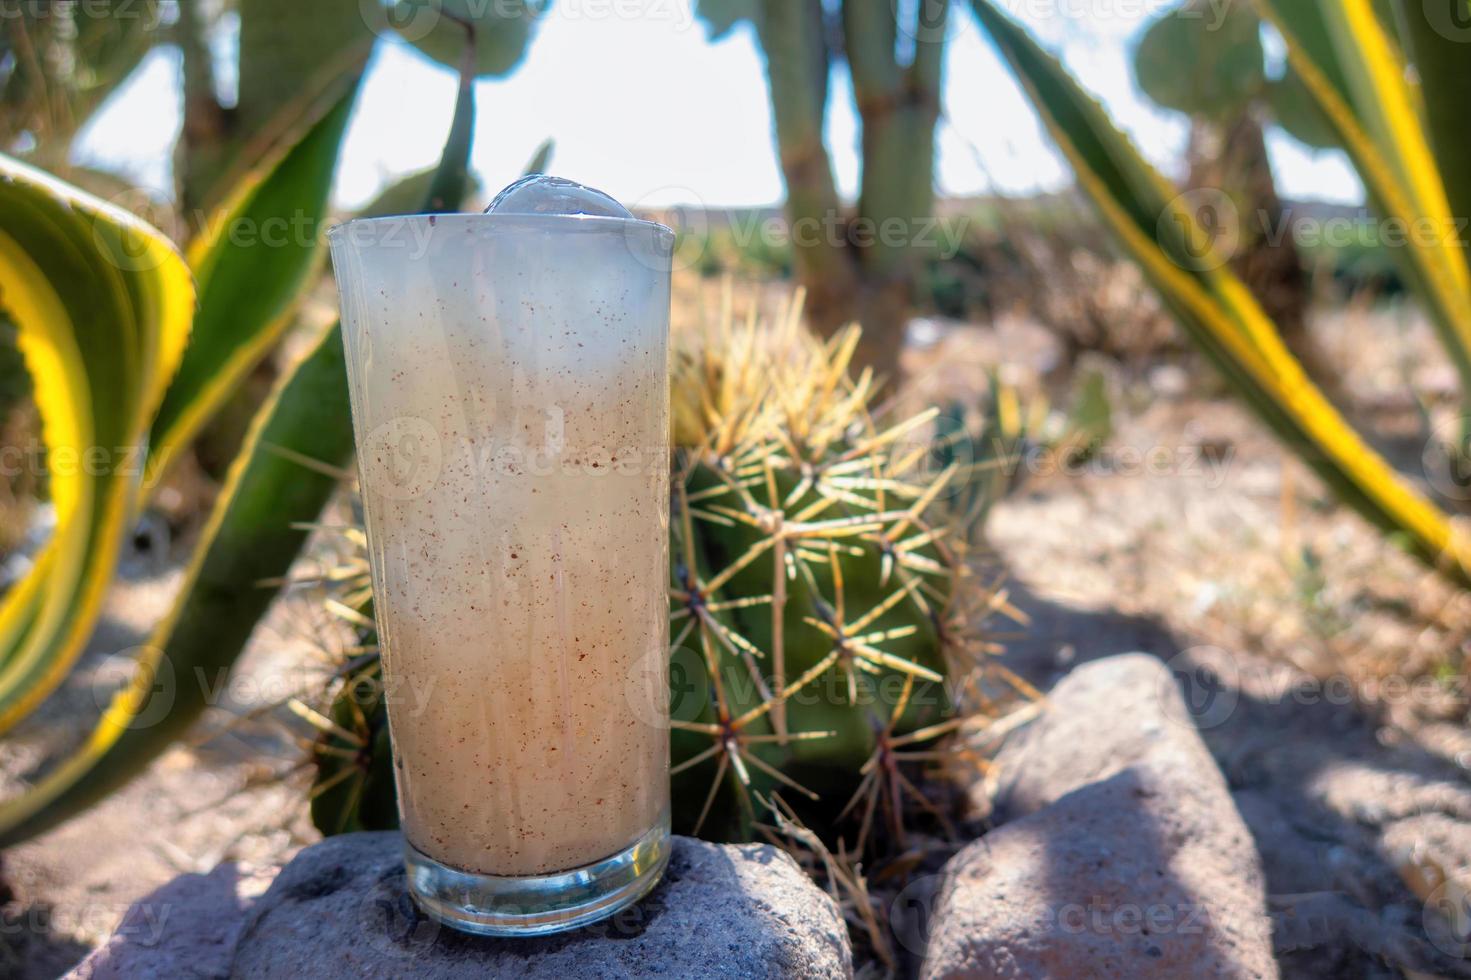 bebida guamiche ferocactus wislizenii tipica de guanajuato mexico foto